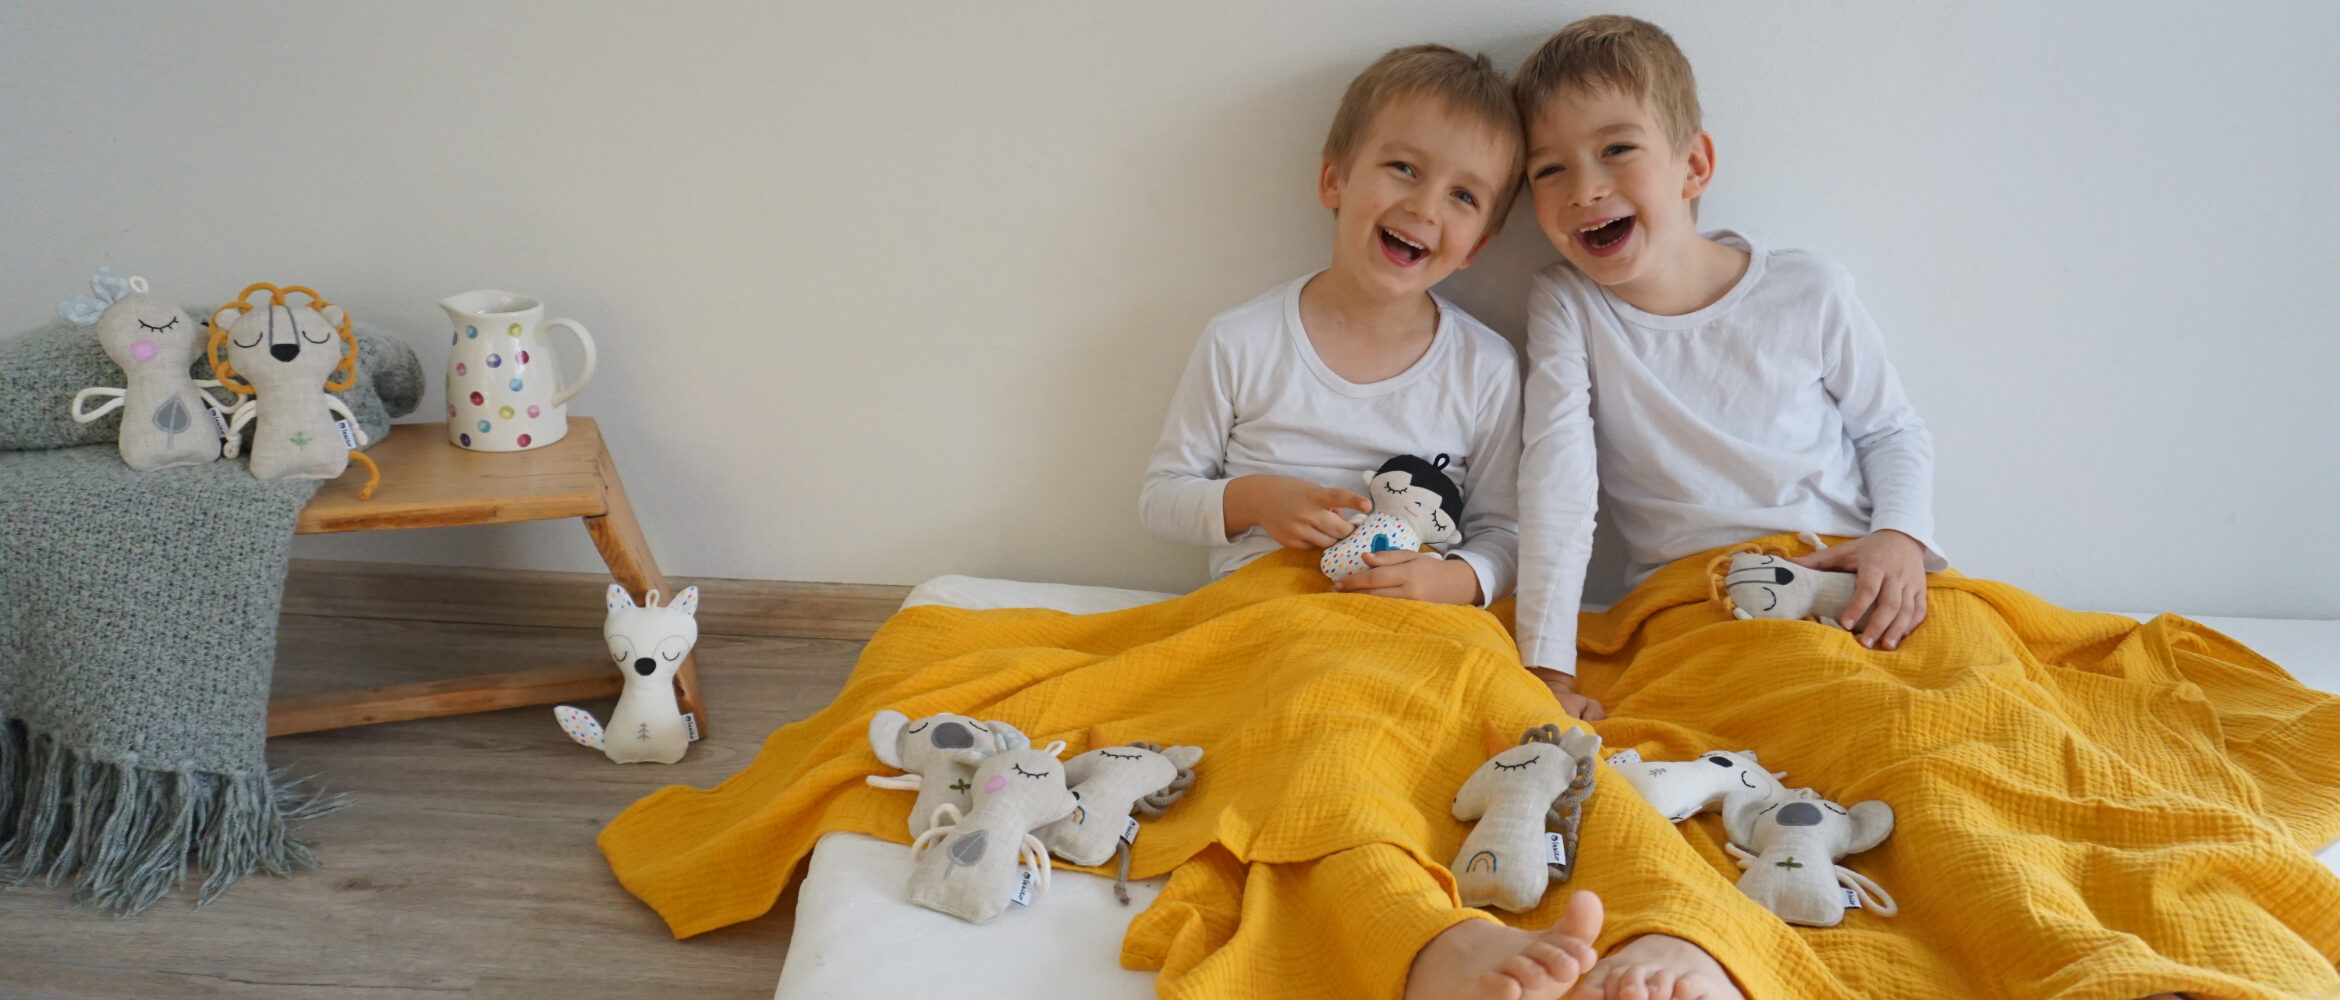 dva chlapci sedí mezi šitými hračkami a smějí se